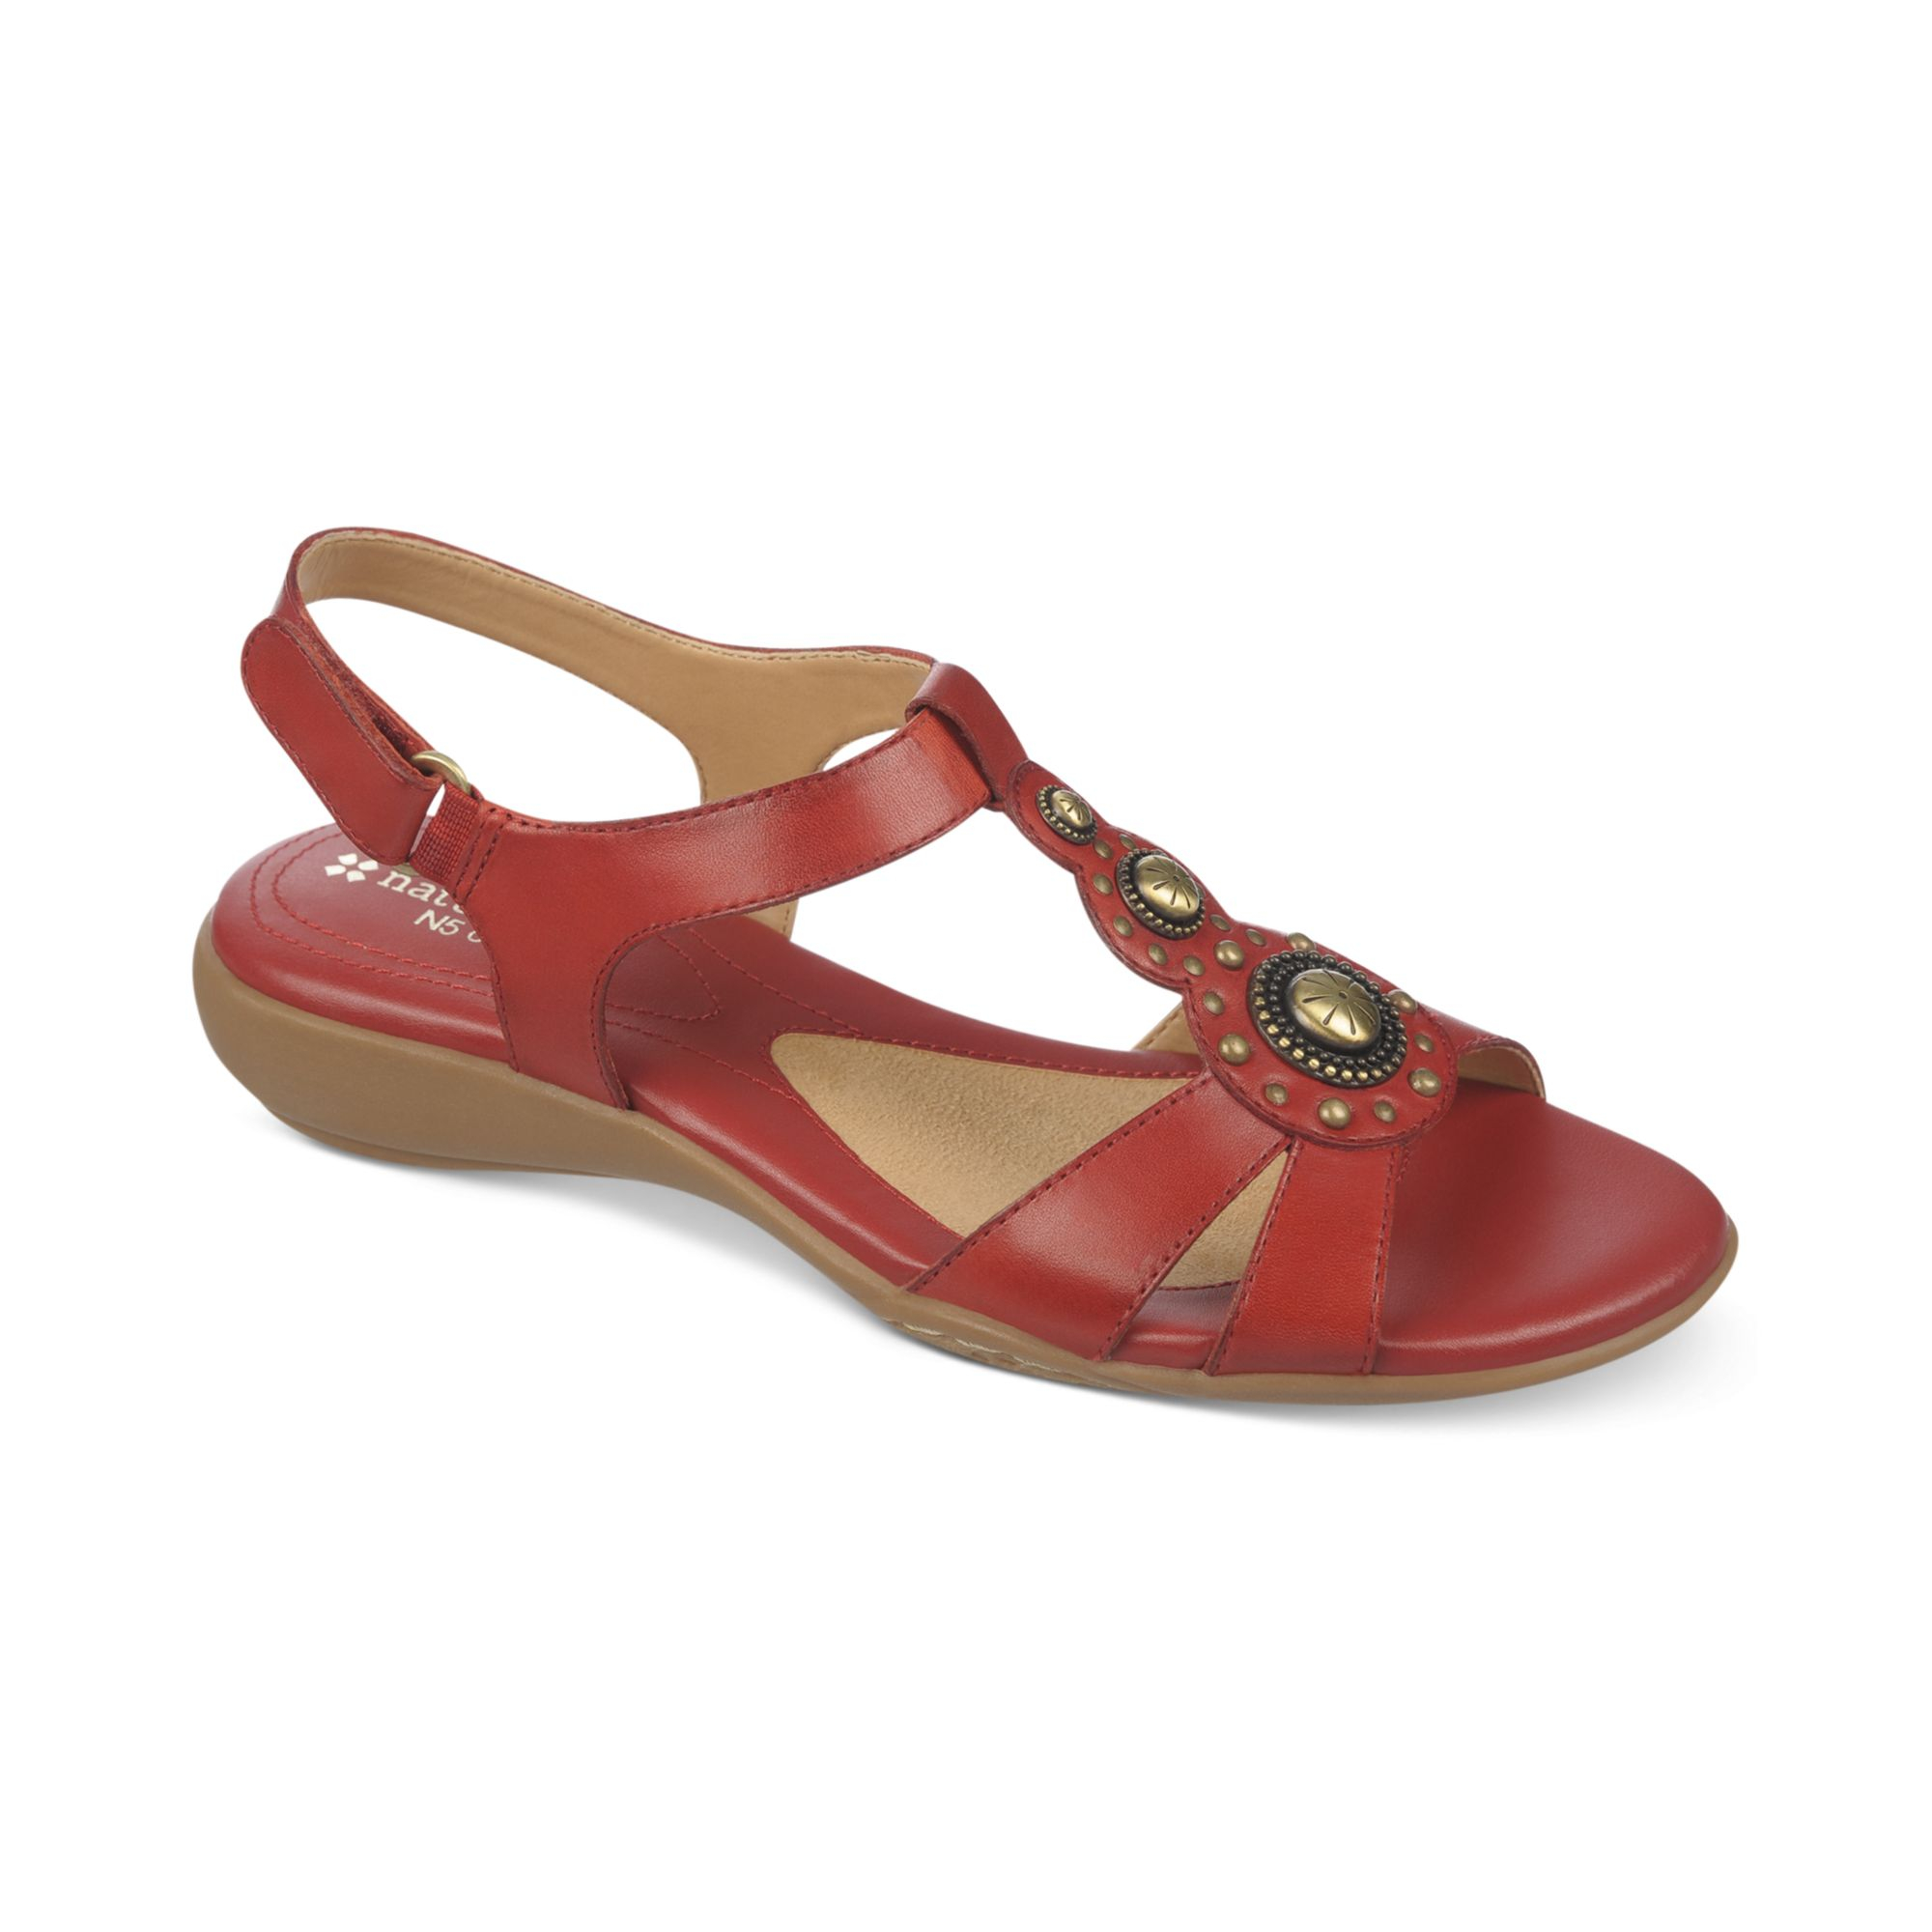 Naturalizer Carlita Flat Sandals in Red (Red Pepper)